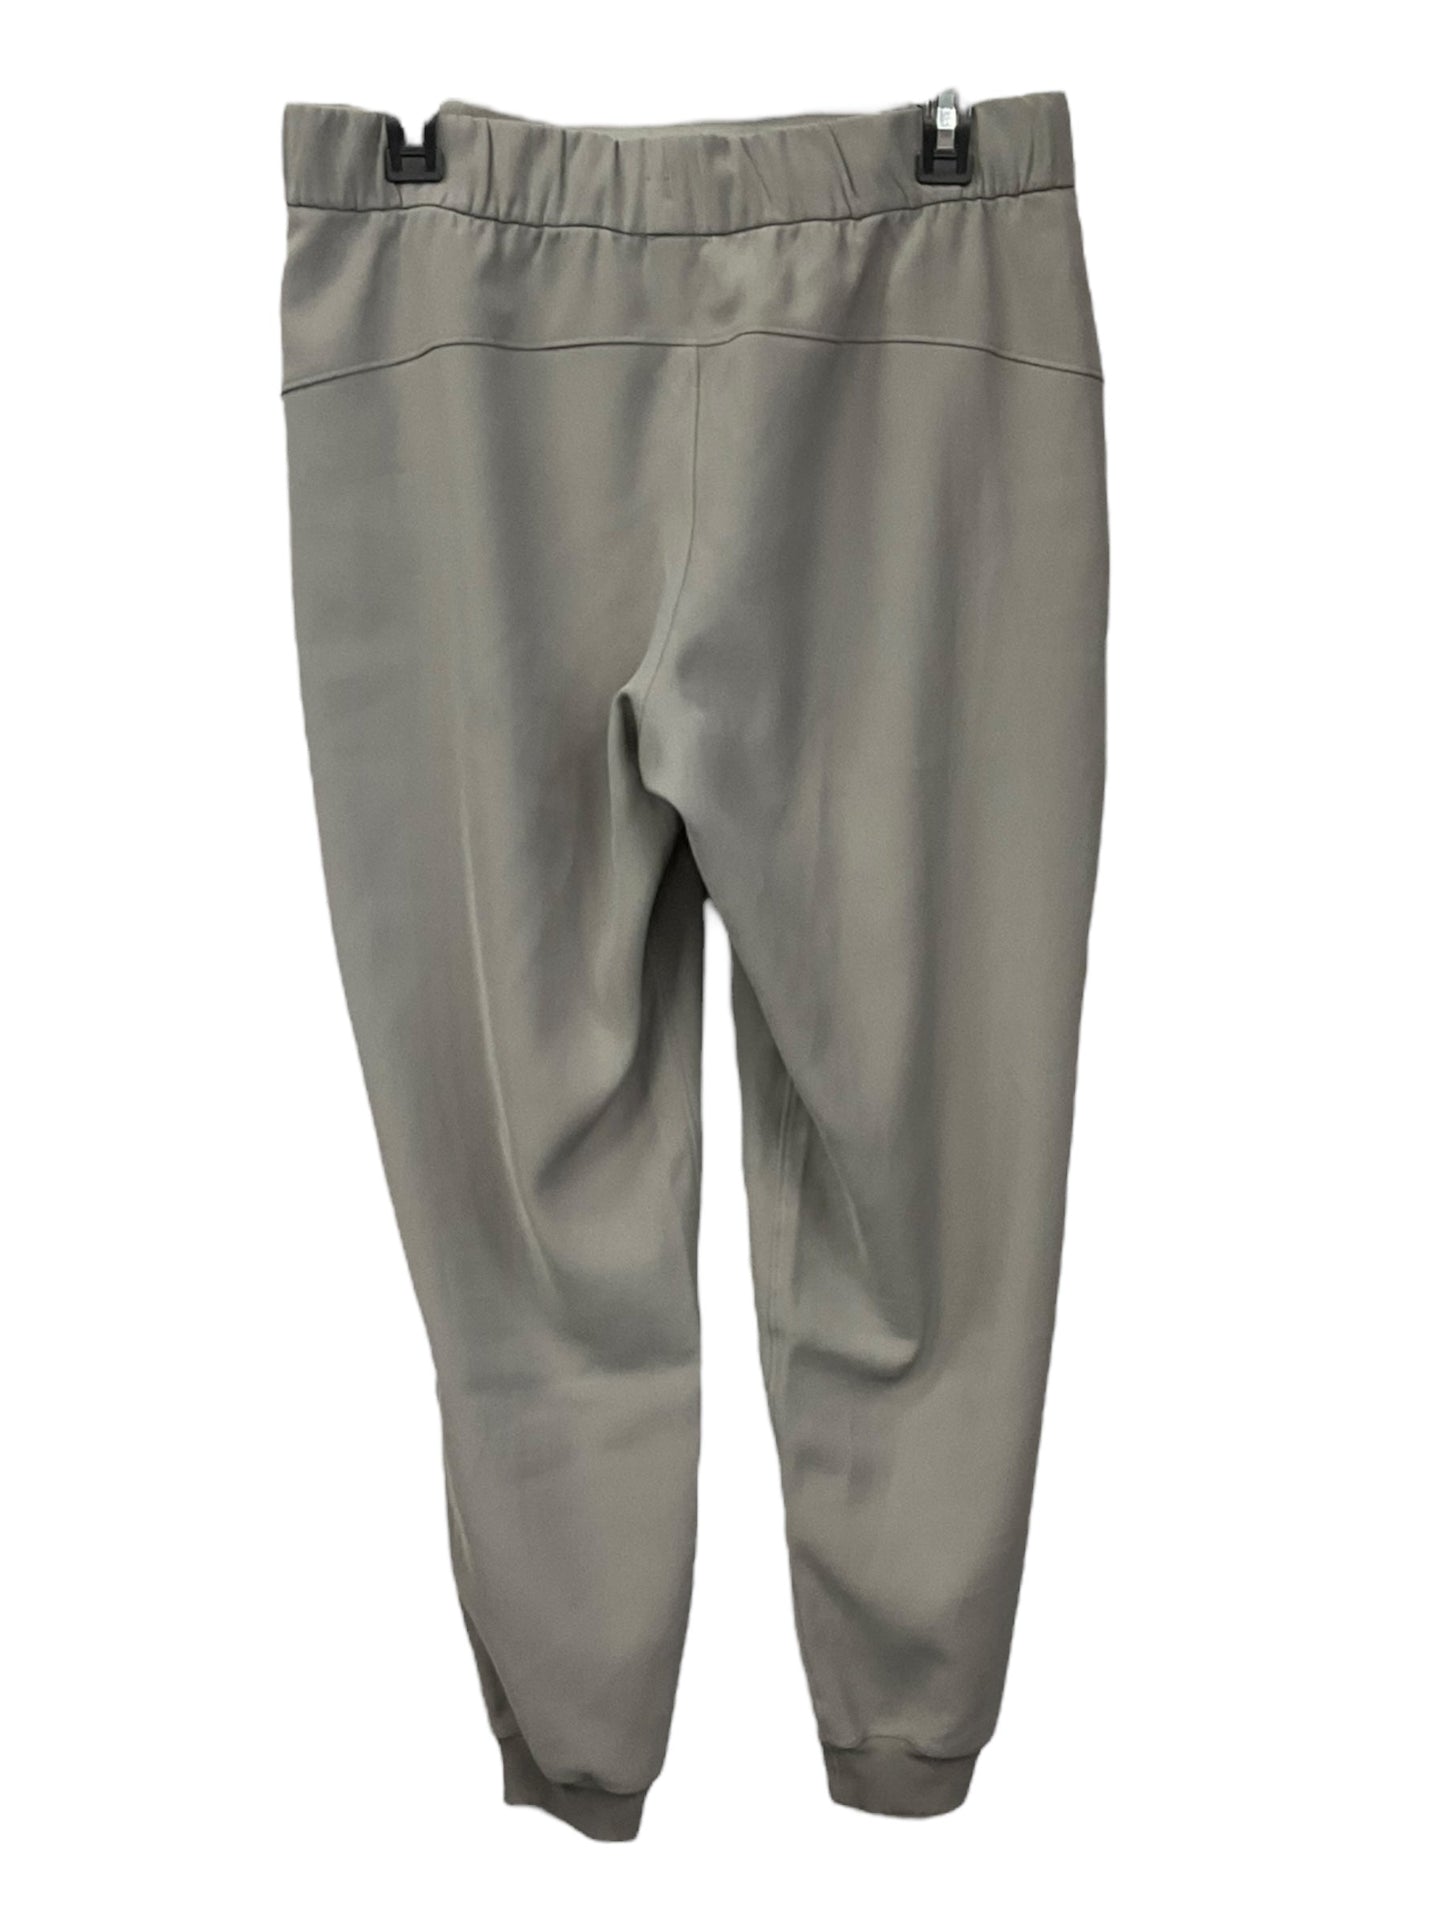 Taupe Athletic Pants Lululemon, Size 8